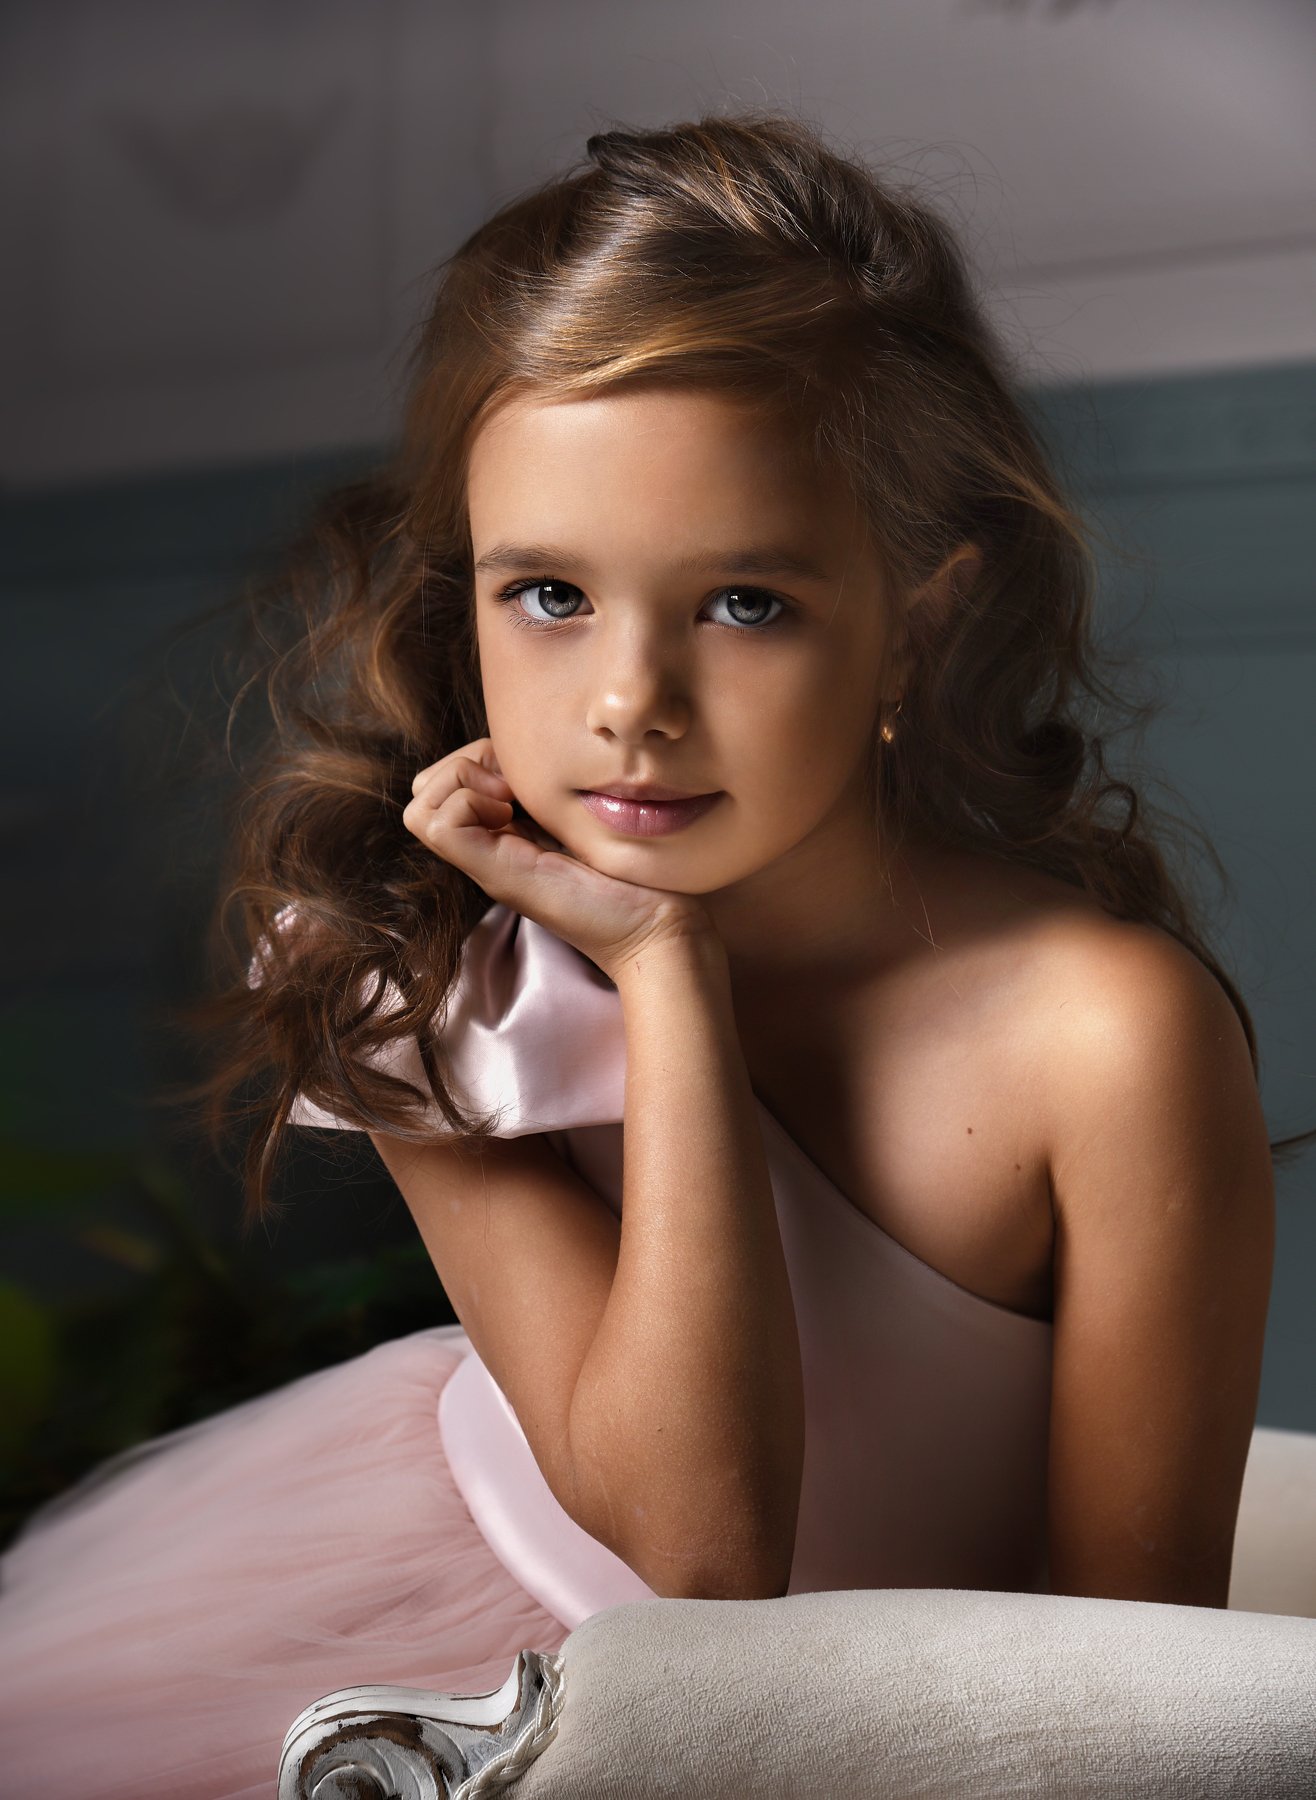 портрет, модель, студия, portrait, fashion, model, girl, child, childportrait, детская фотография, красивая девочка, модель, Ogneva Olli